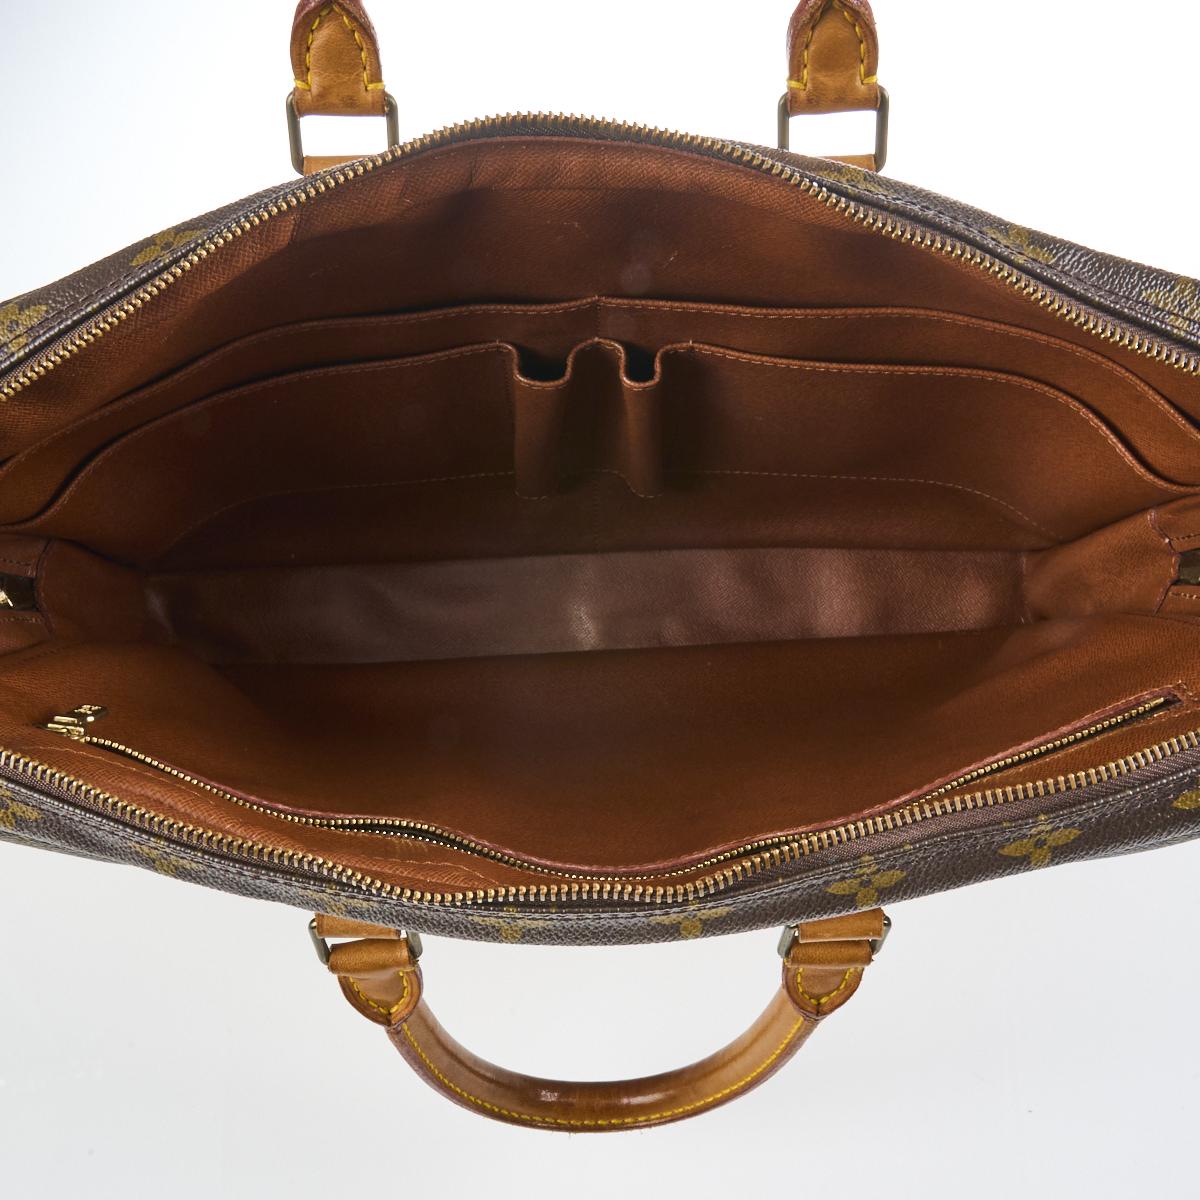 Sold at Auction: Louis Vuitton Porte Documents Voyage Monogram Business Bag